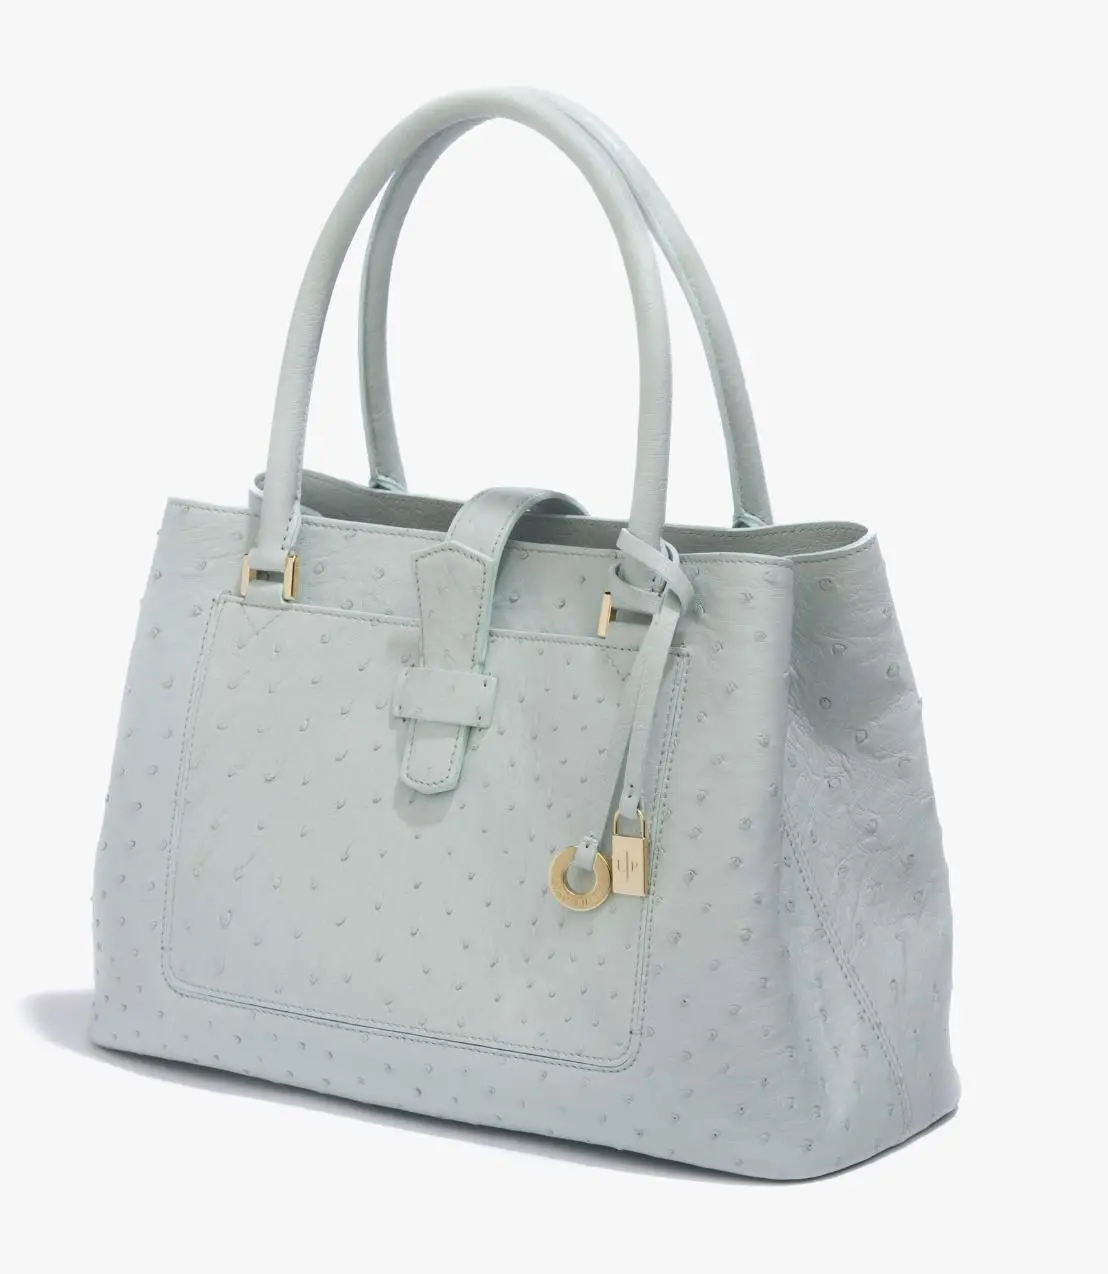 Bellevue_Media_Loro_Piana_Handbags